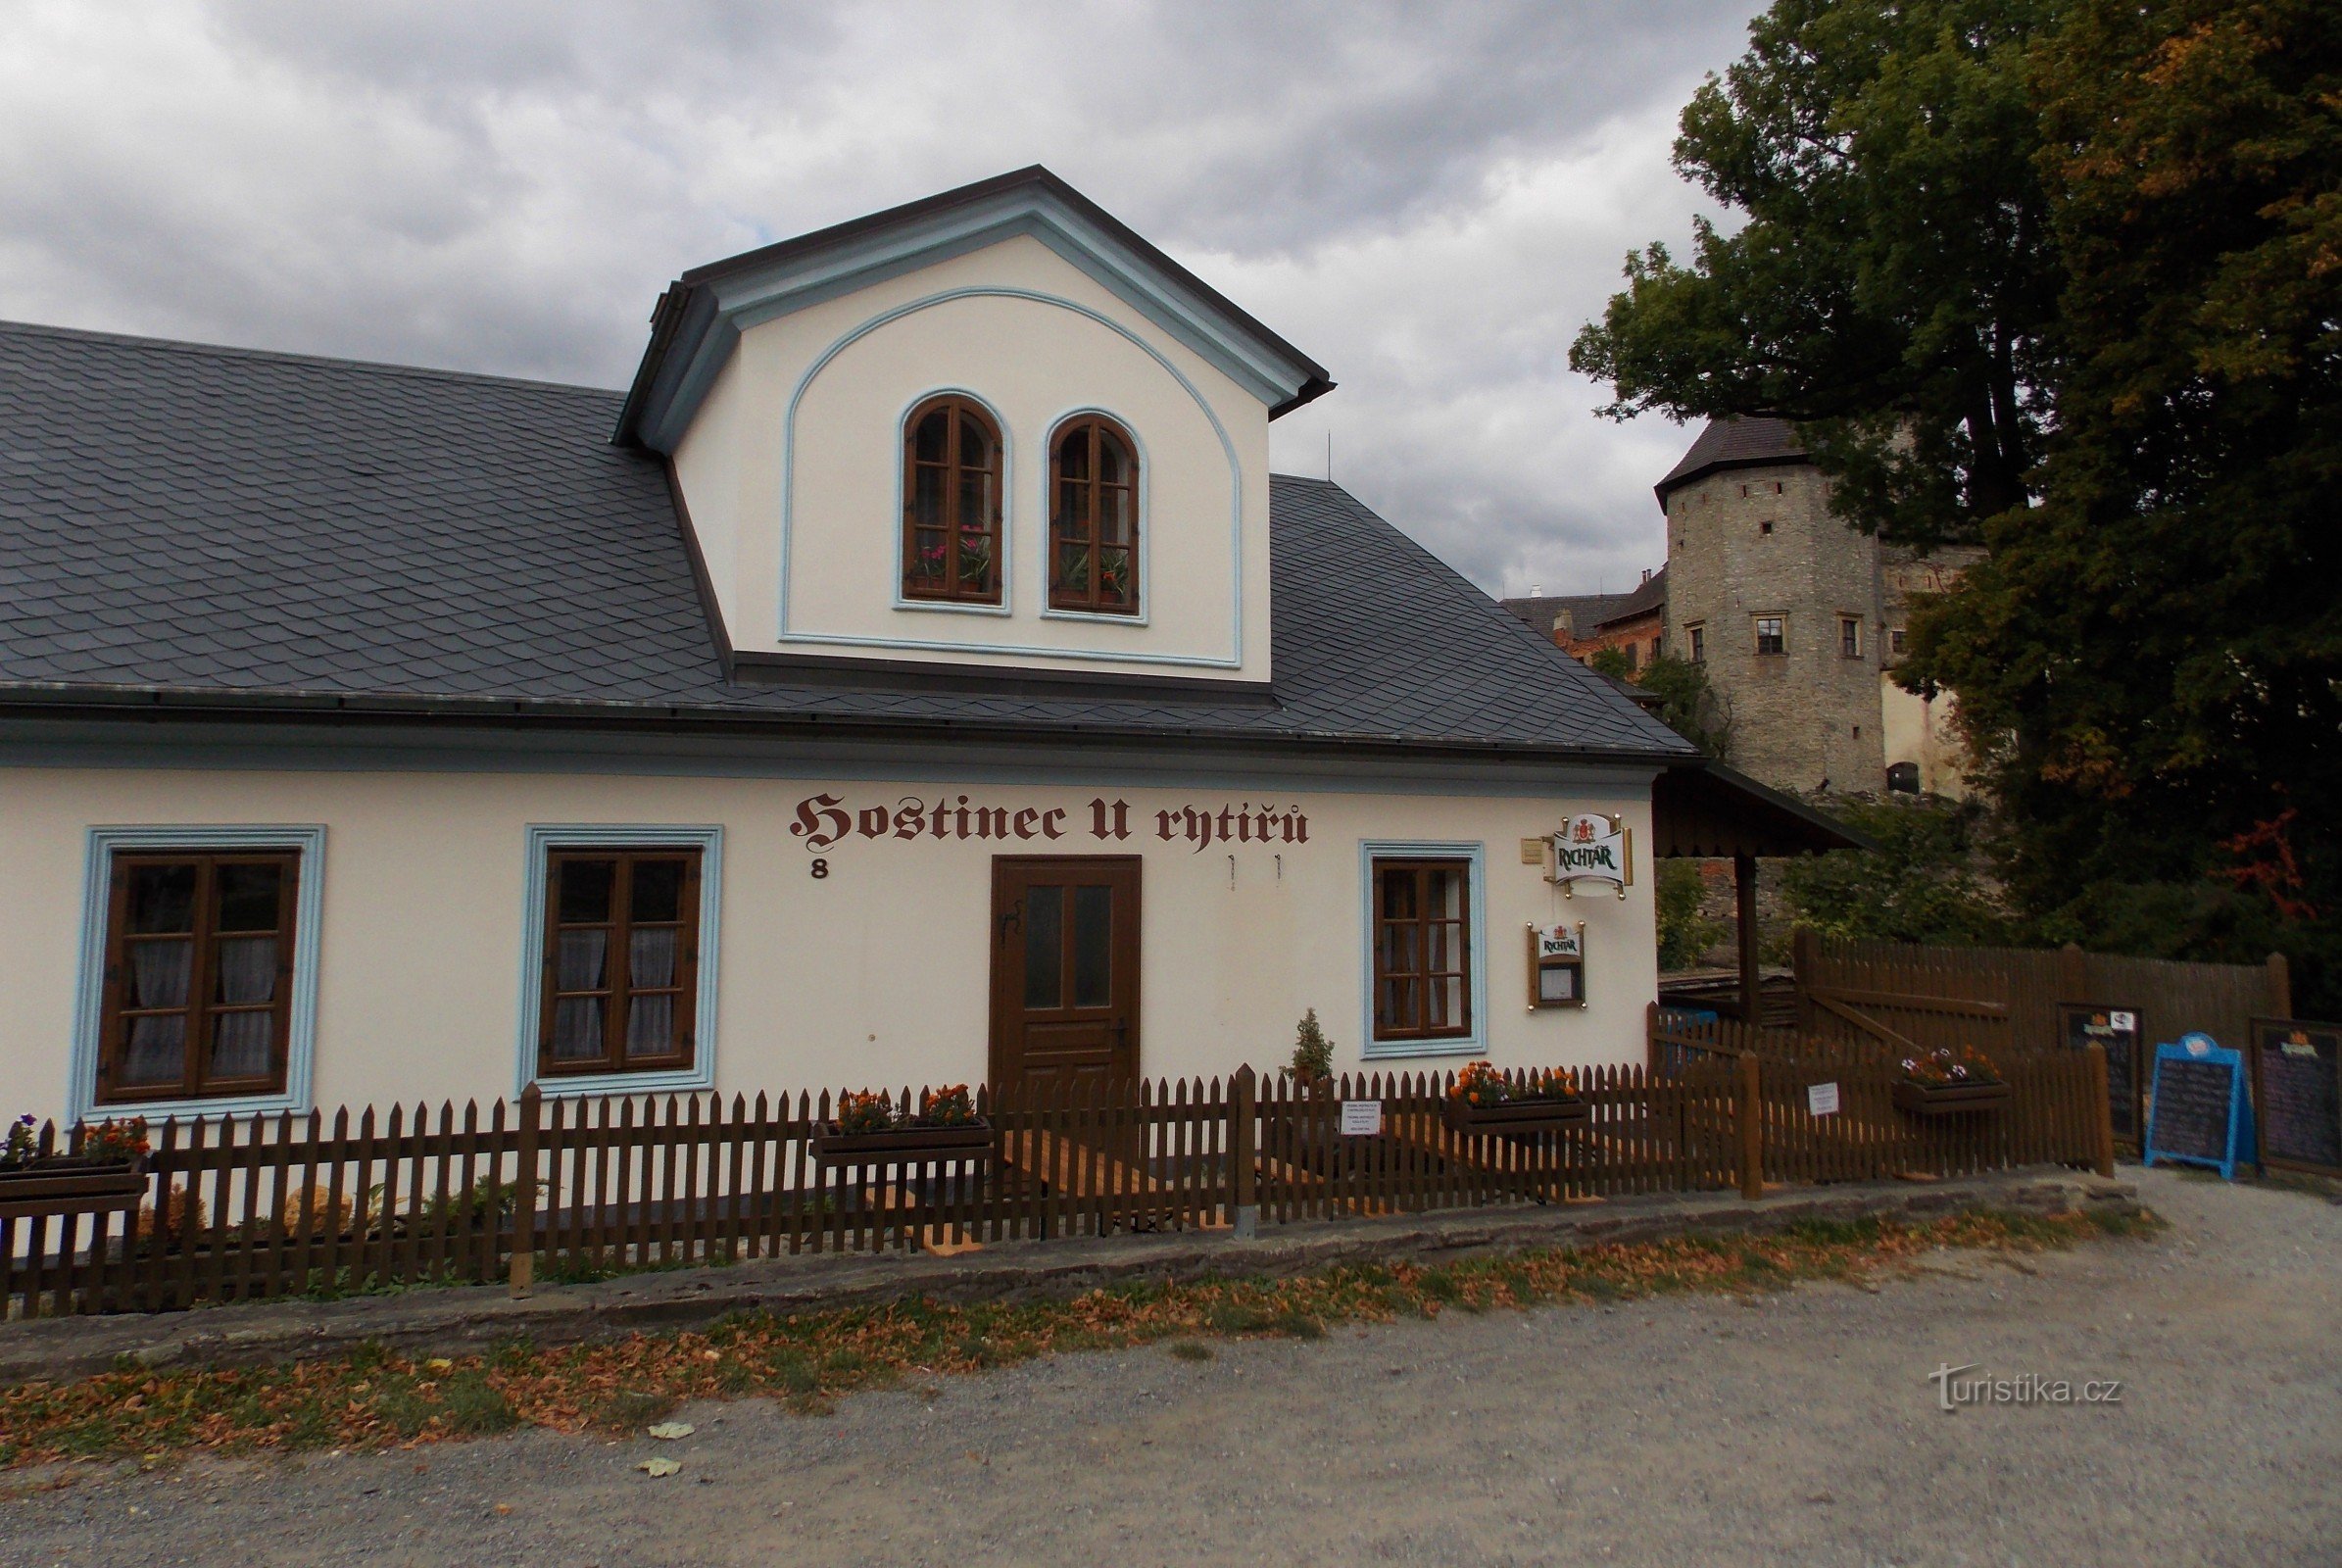 Πανδοχείο U Rytířů κοντά στο κάστρο Sovinec